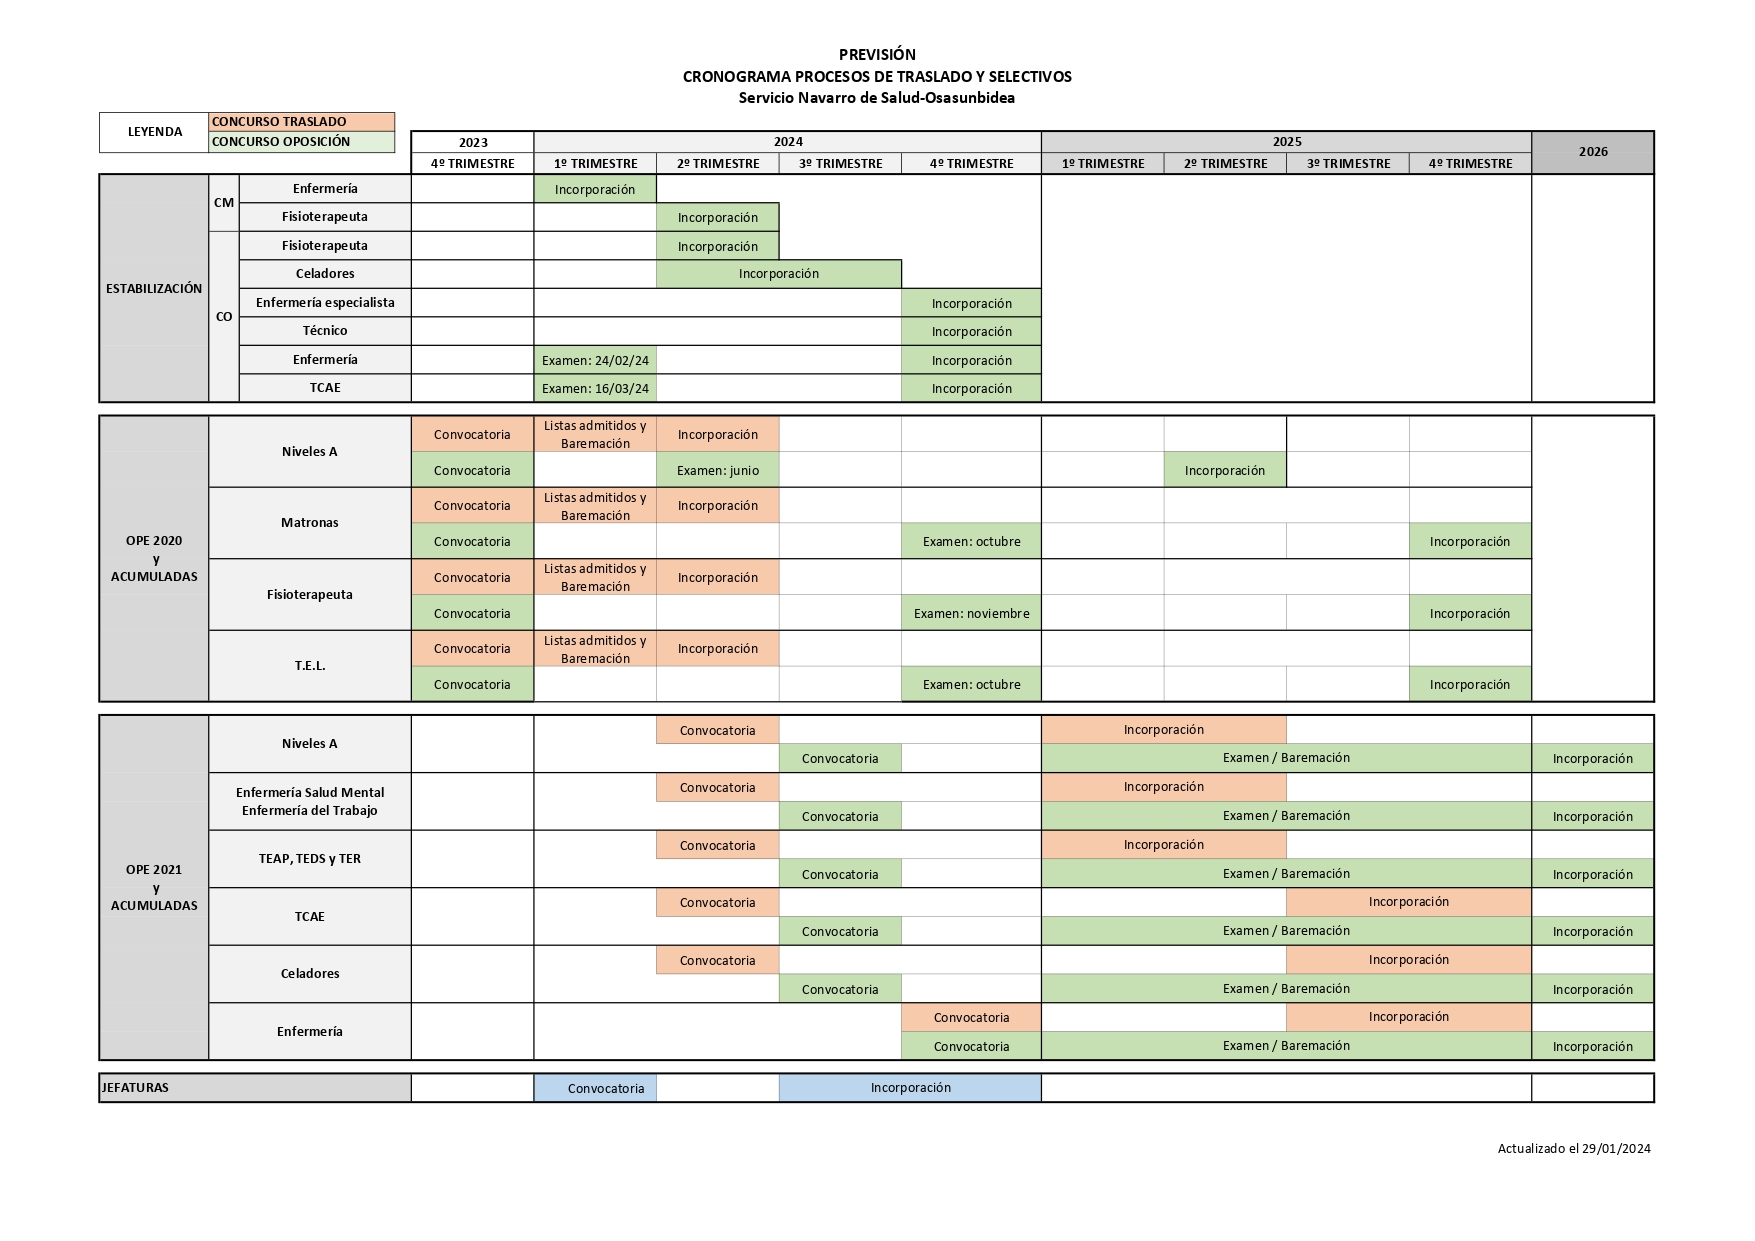 Cronograma OPEs estabilización 2020 y acumuladas 2021 y acumuladas y jefaturas 1 page 0001